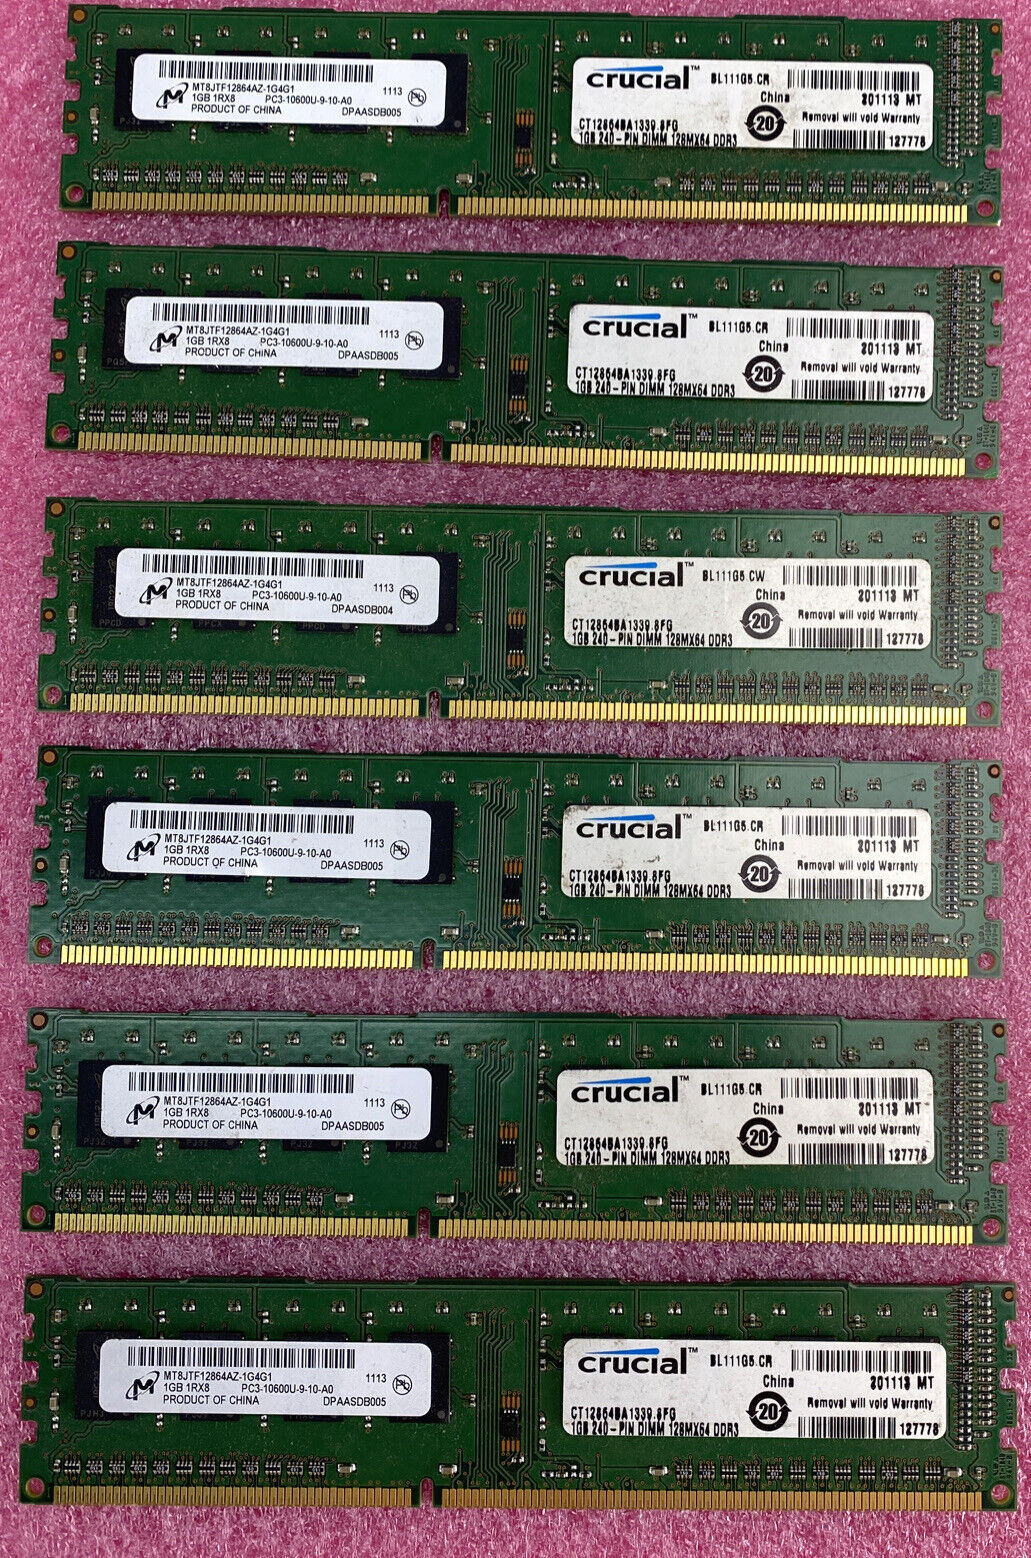 Lot( 6 ) 1GB Micron MT8JTF12864AZ-1G4G1 DDR3-1333 PC3-10600 Desktop Memory RAM